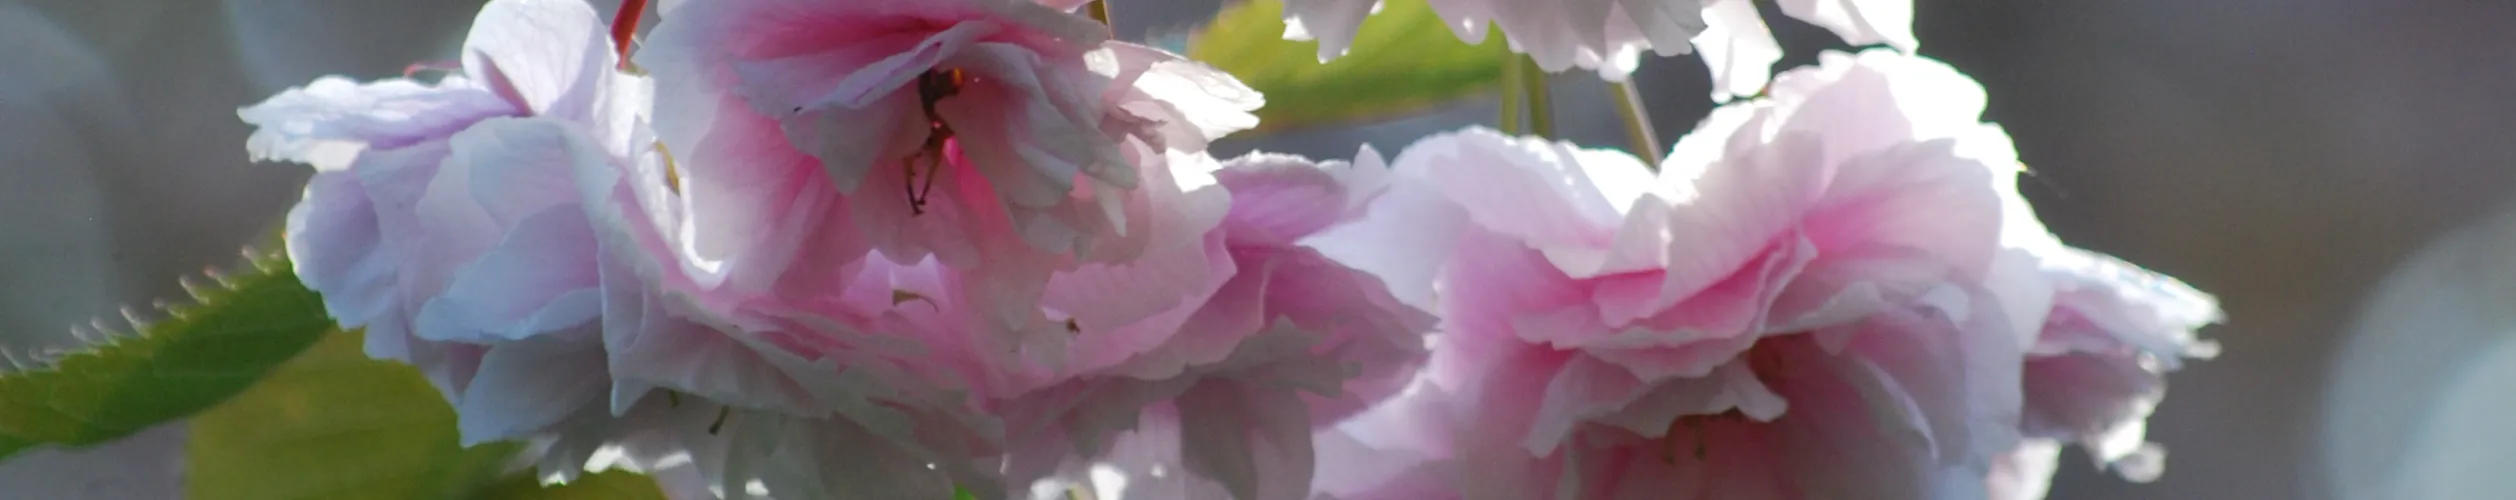 Fotoausschnitt eines Zierkirschenzweiges, von dem eine Kaskade Blüten herabhängt.